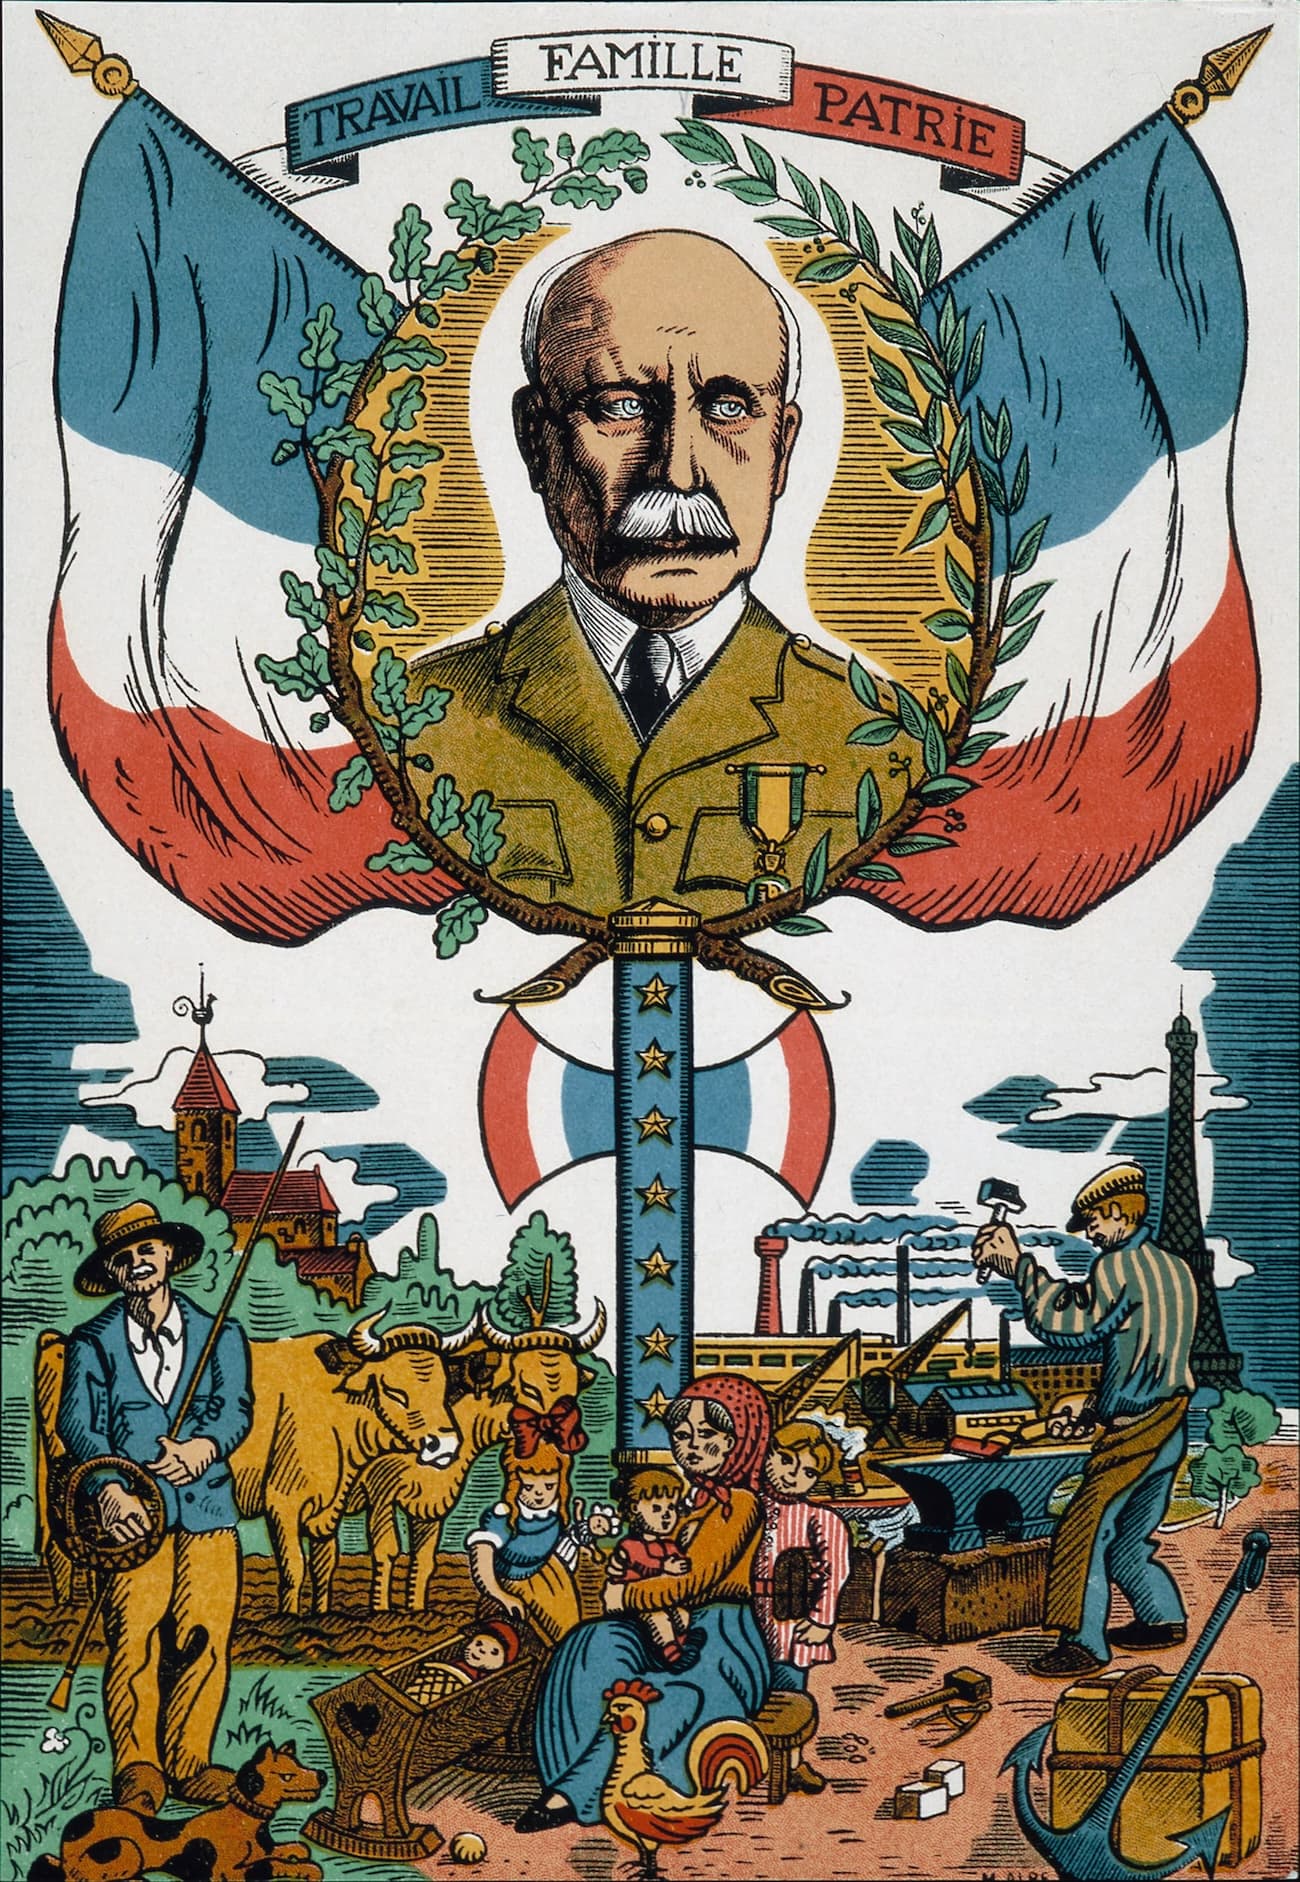 Kırsal ve endüstriyel Fransa manzarası üzerinde sloganın ve Philippe Pétain'in yer aldığı propaganda görseli.